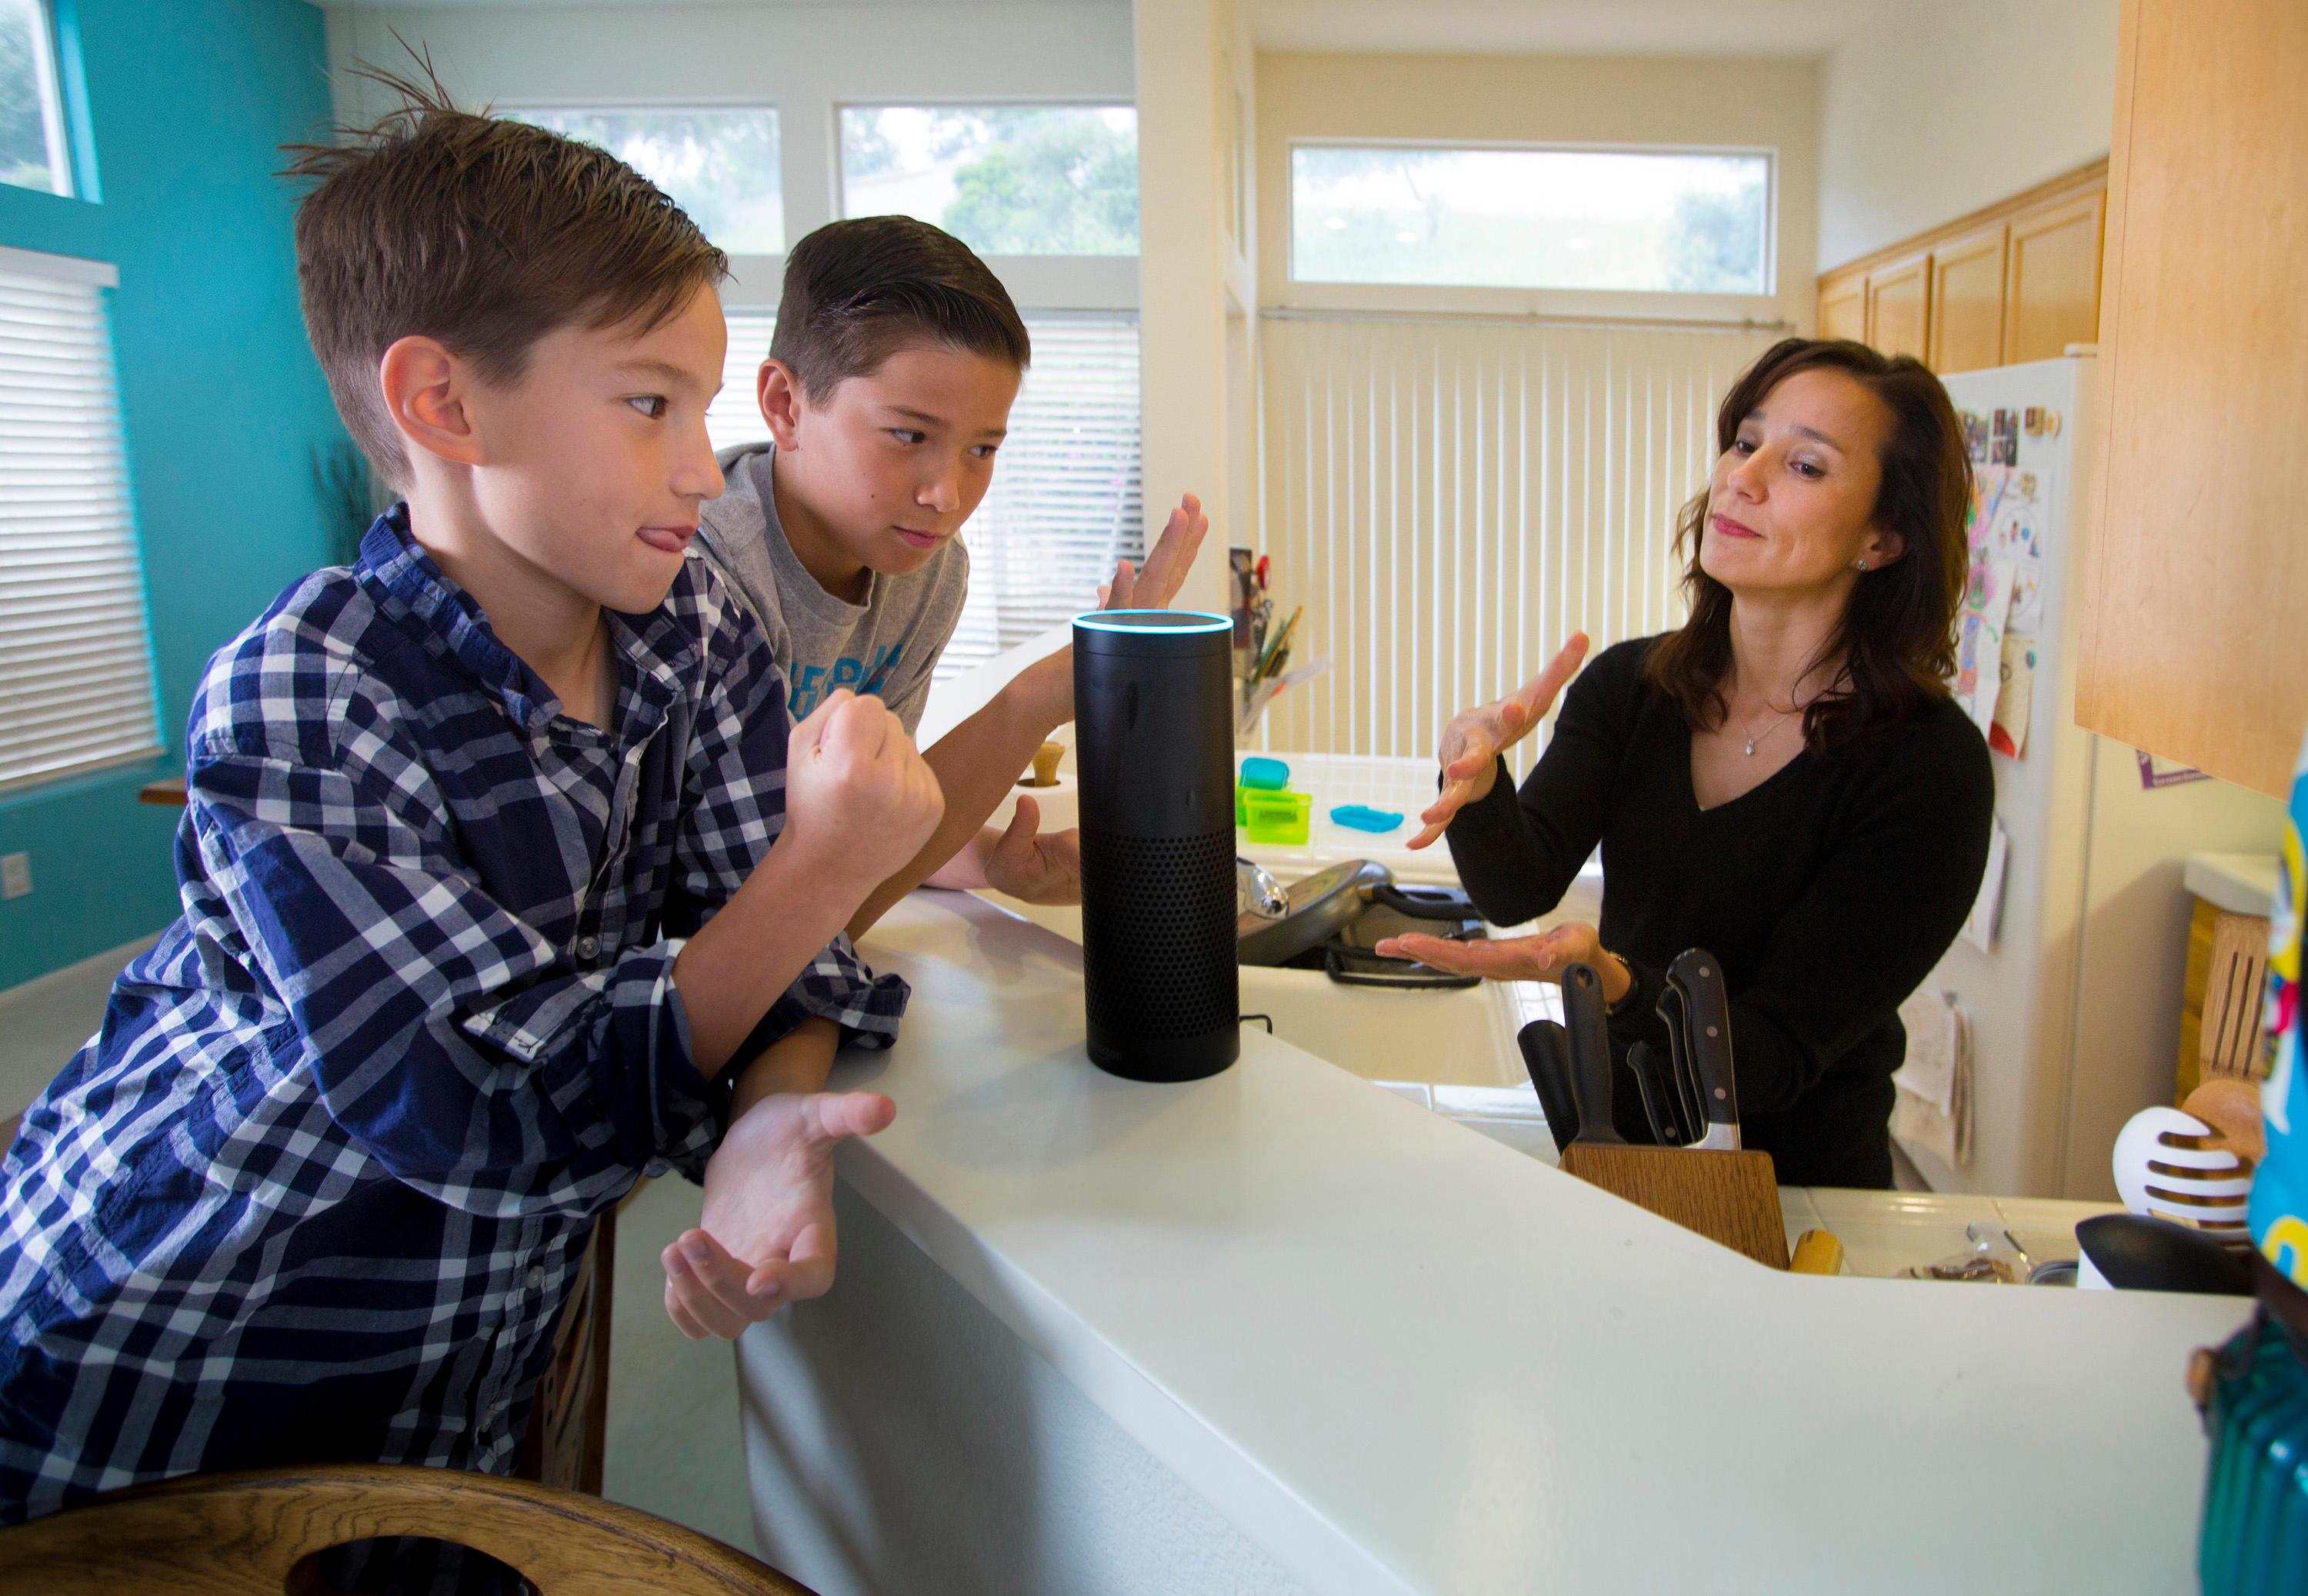  Orang asing dapat mendengarkan obrolan pribadi Anda dengan anggota keluarga melalui Alexa